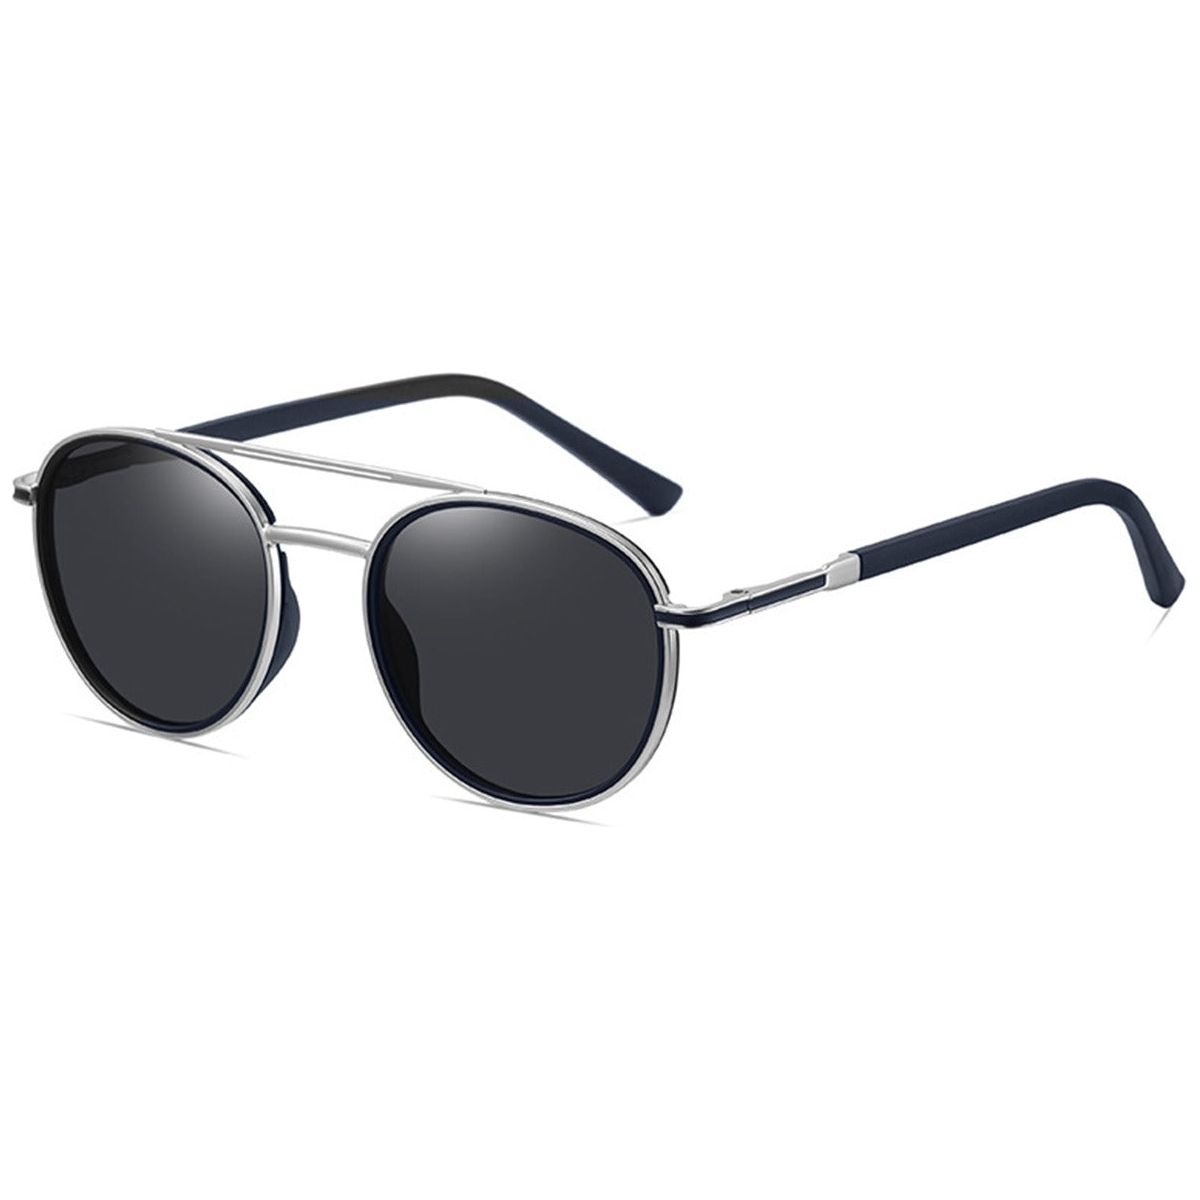 Candye Aviator Sunglasses SG4893 